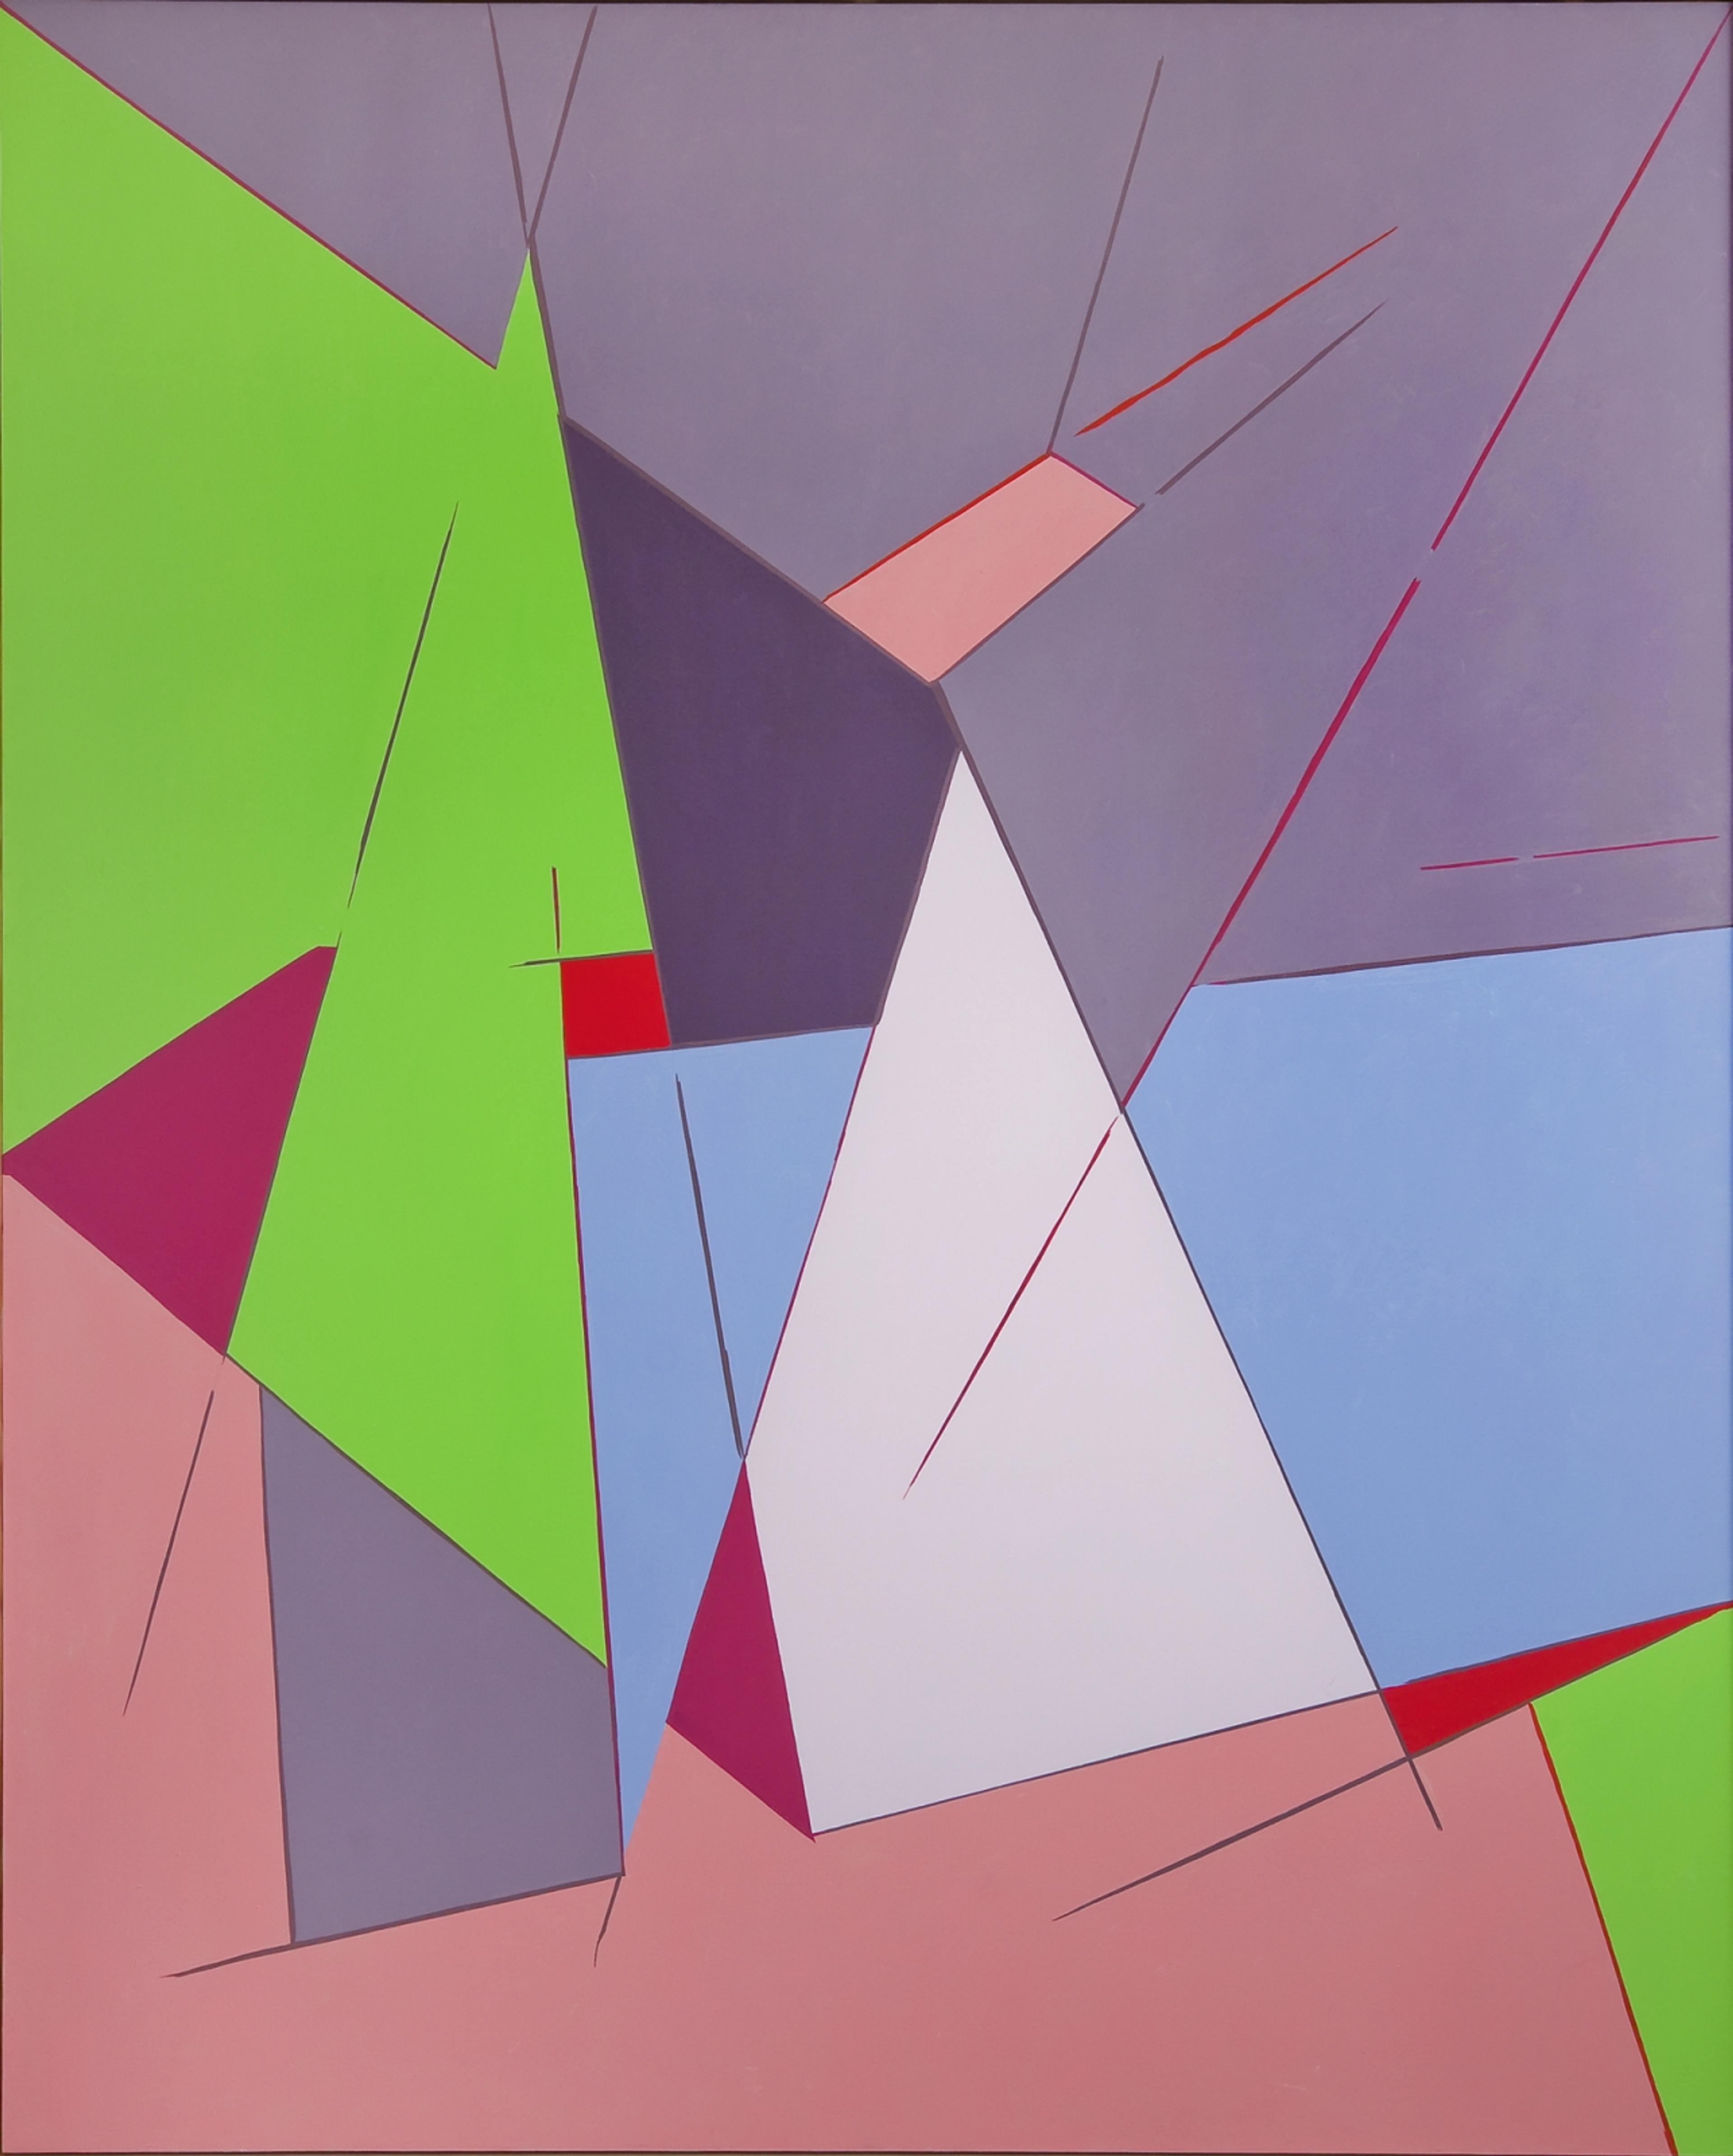 Et abstrakt verk med geometriske former i rosa, lilla, rødt, grønt, blått